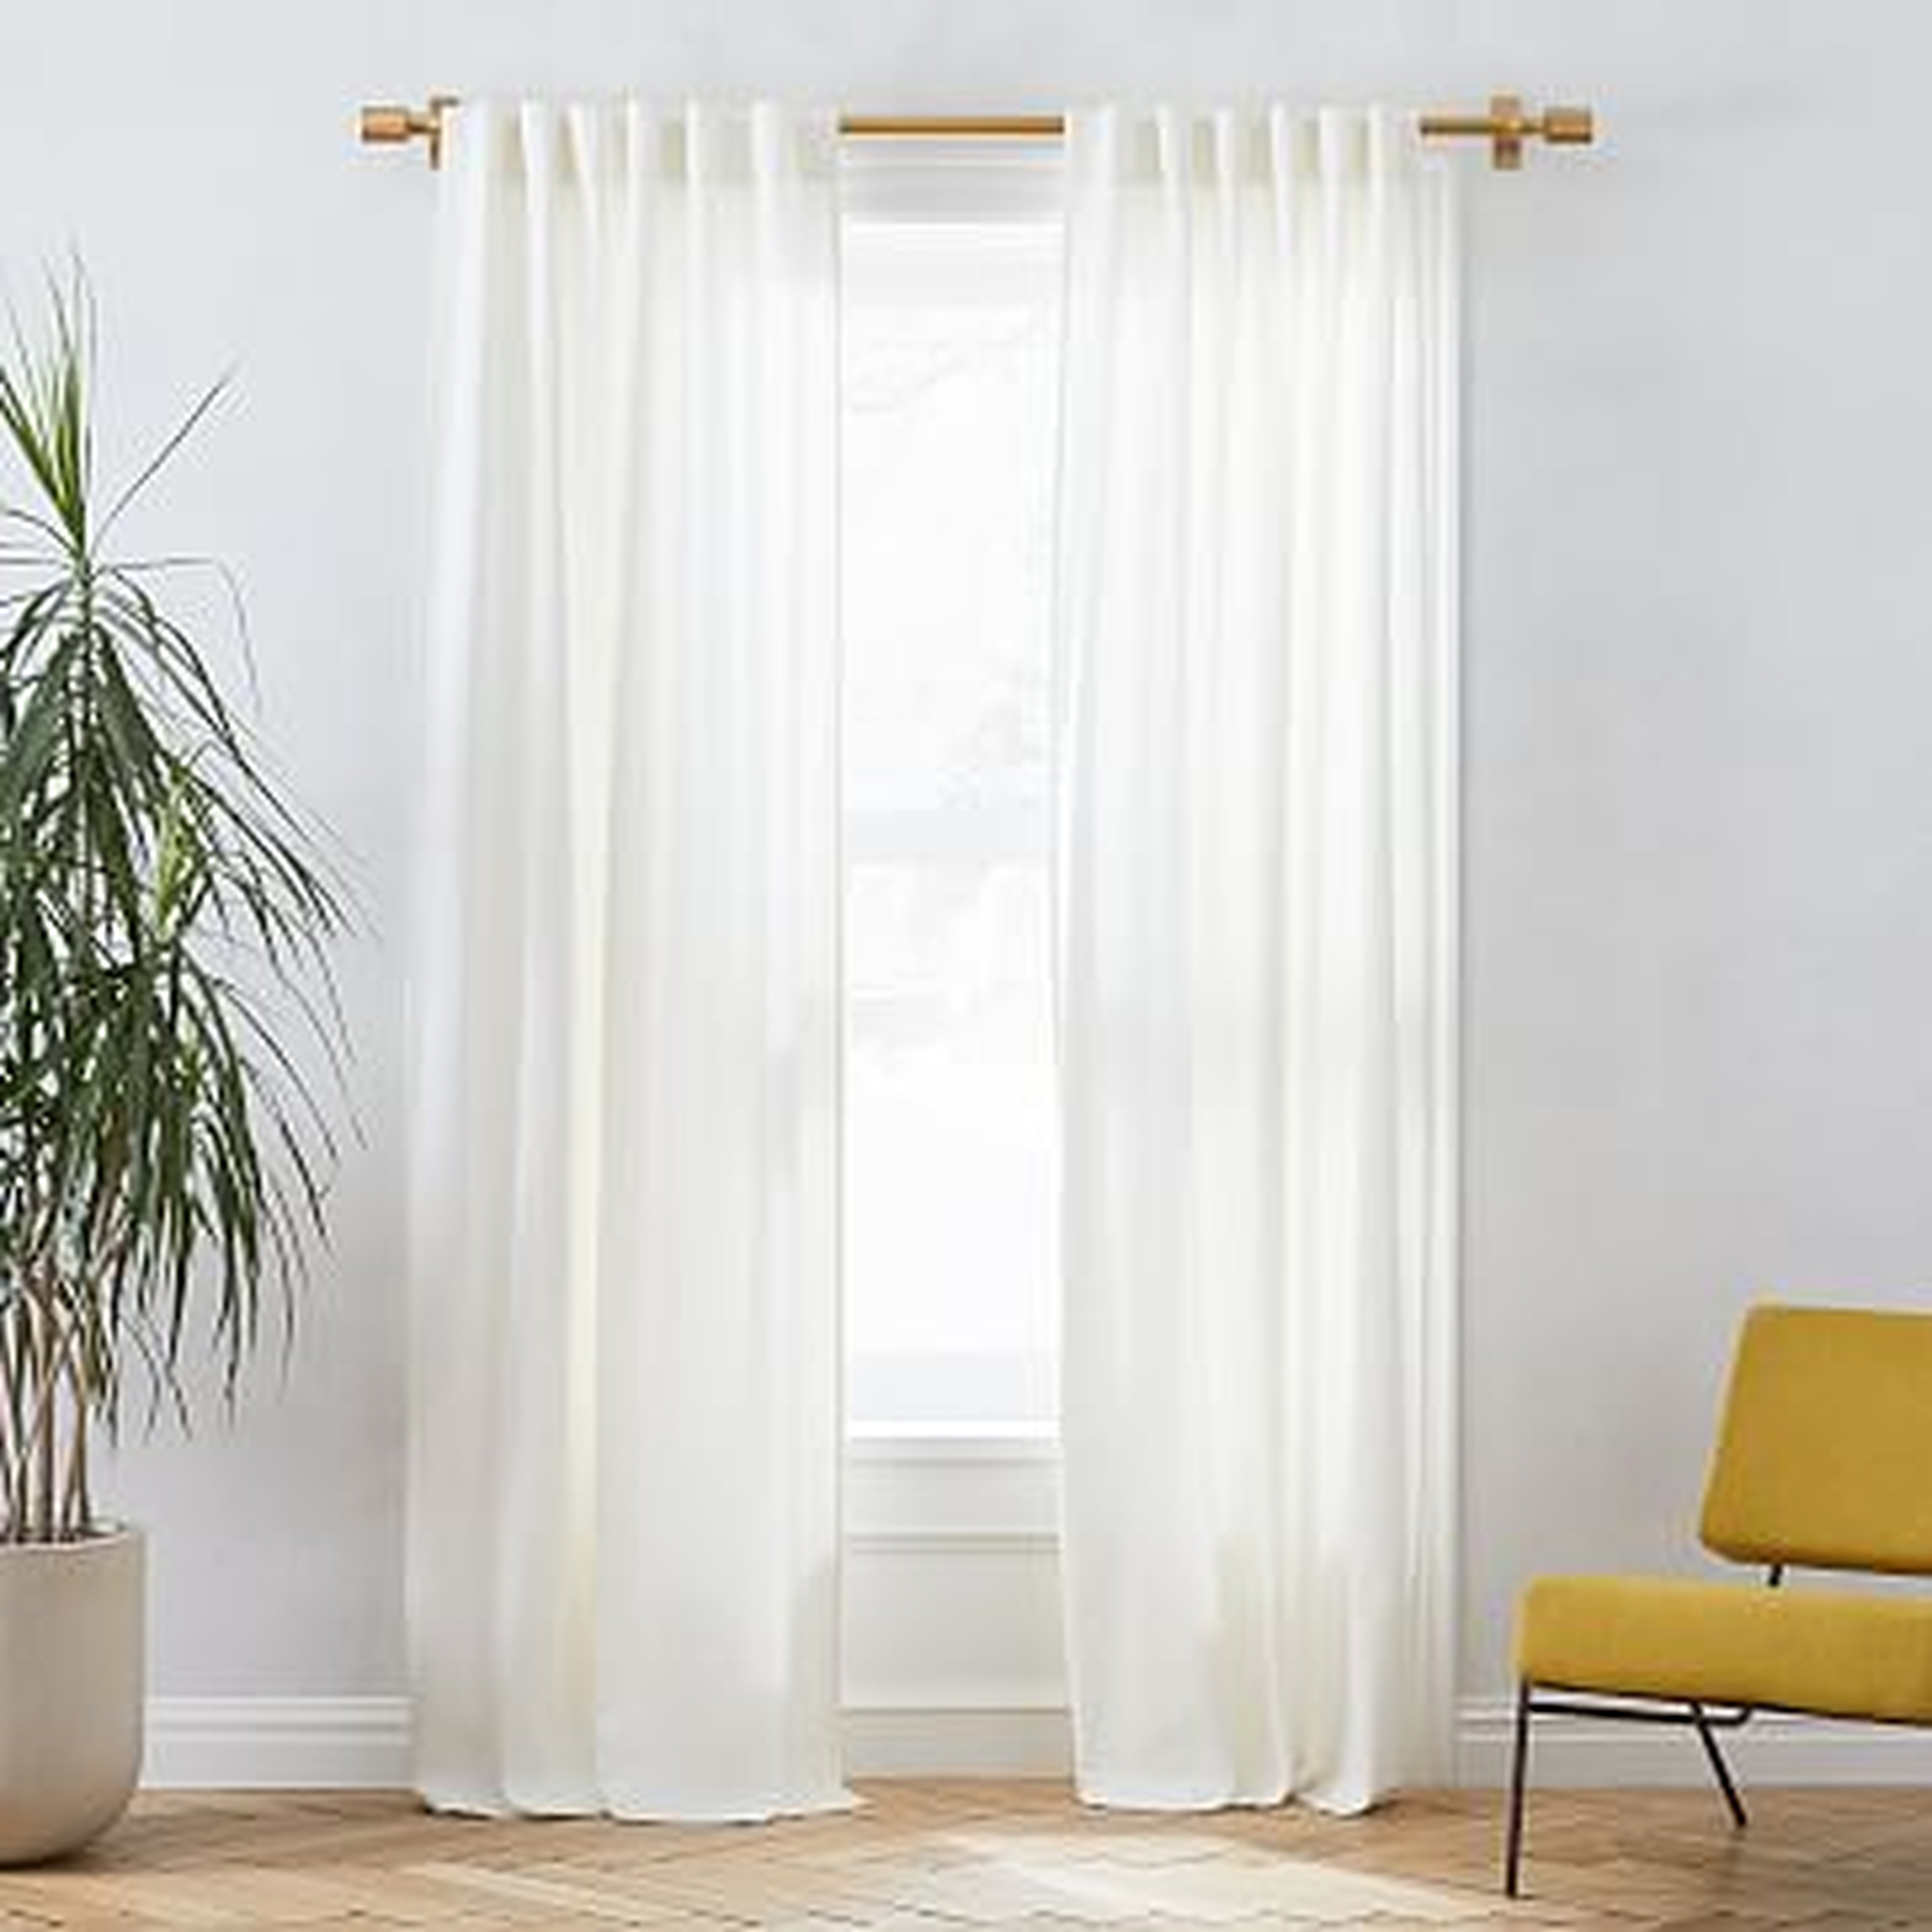 Linen Cotton Pole Pocket Curtain + Blackout Panel, White, 48"x108", Single - West Elm